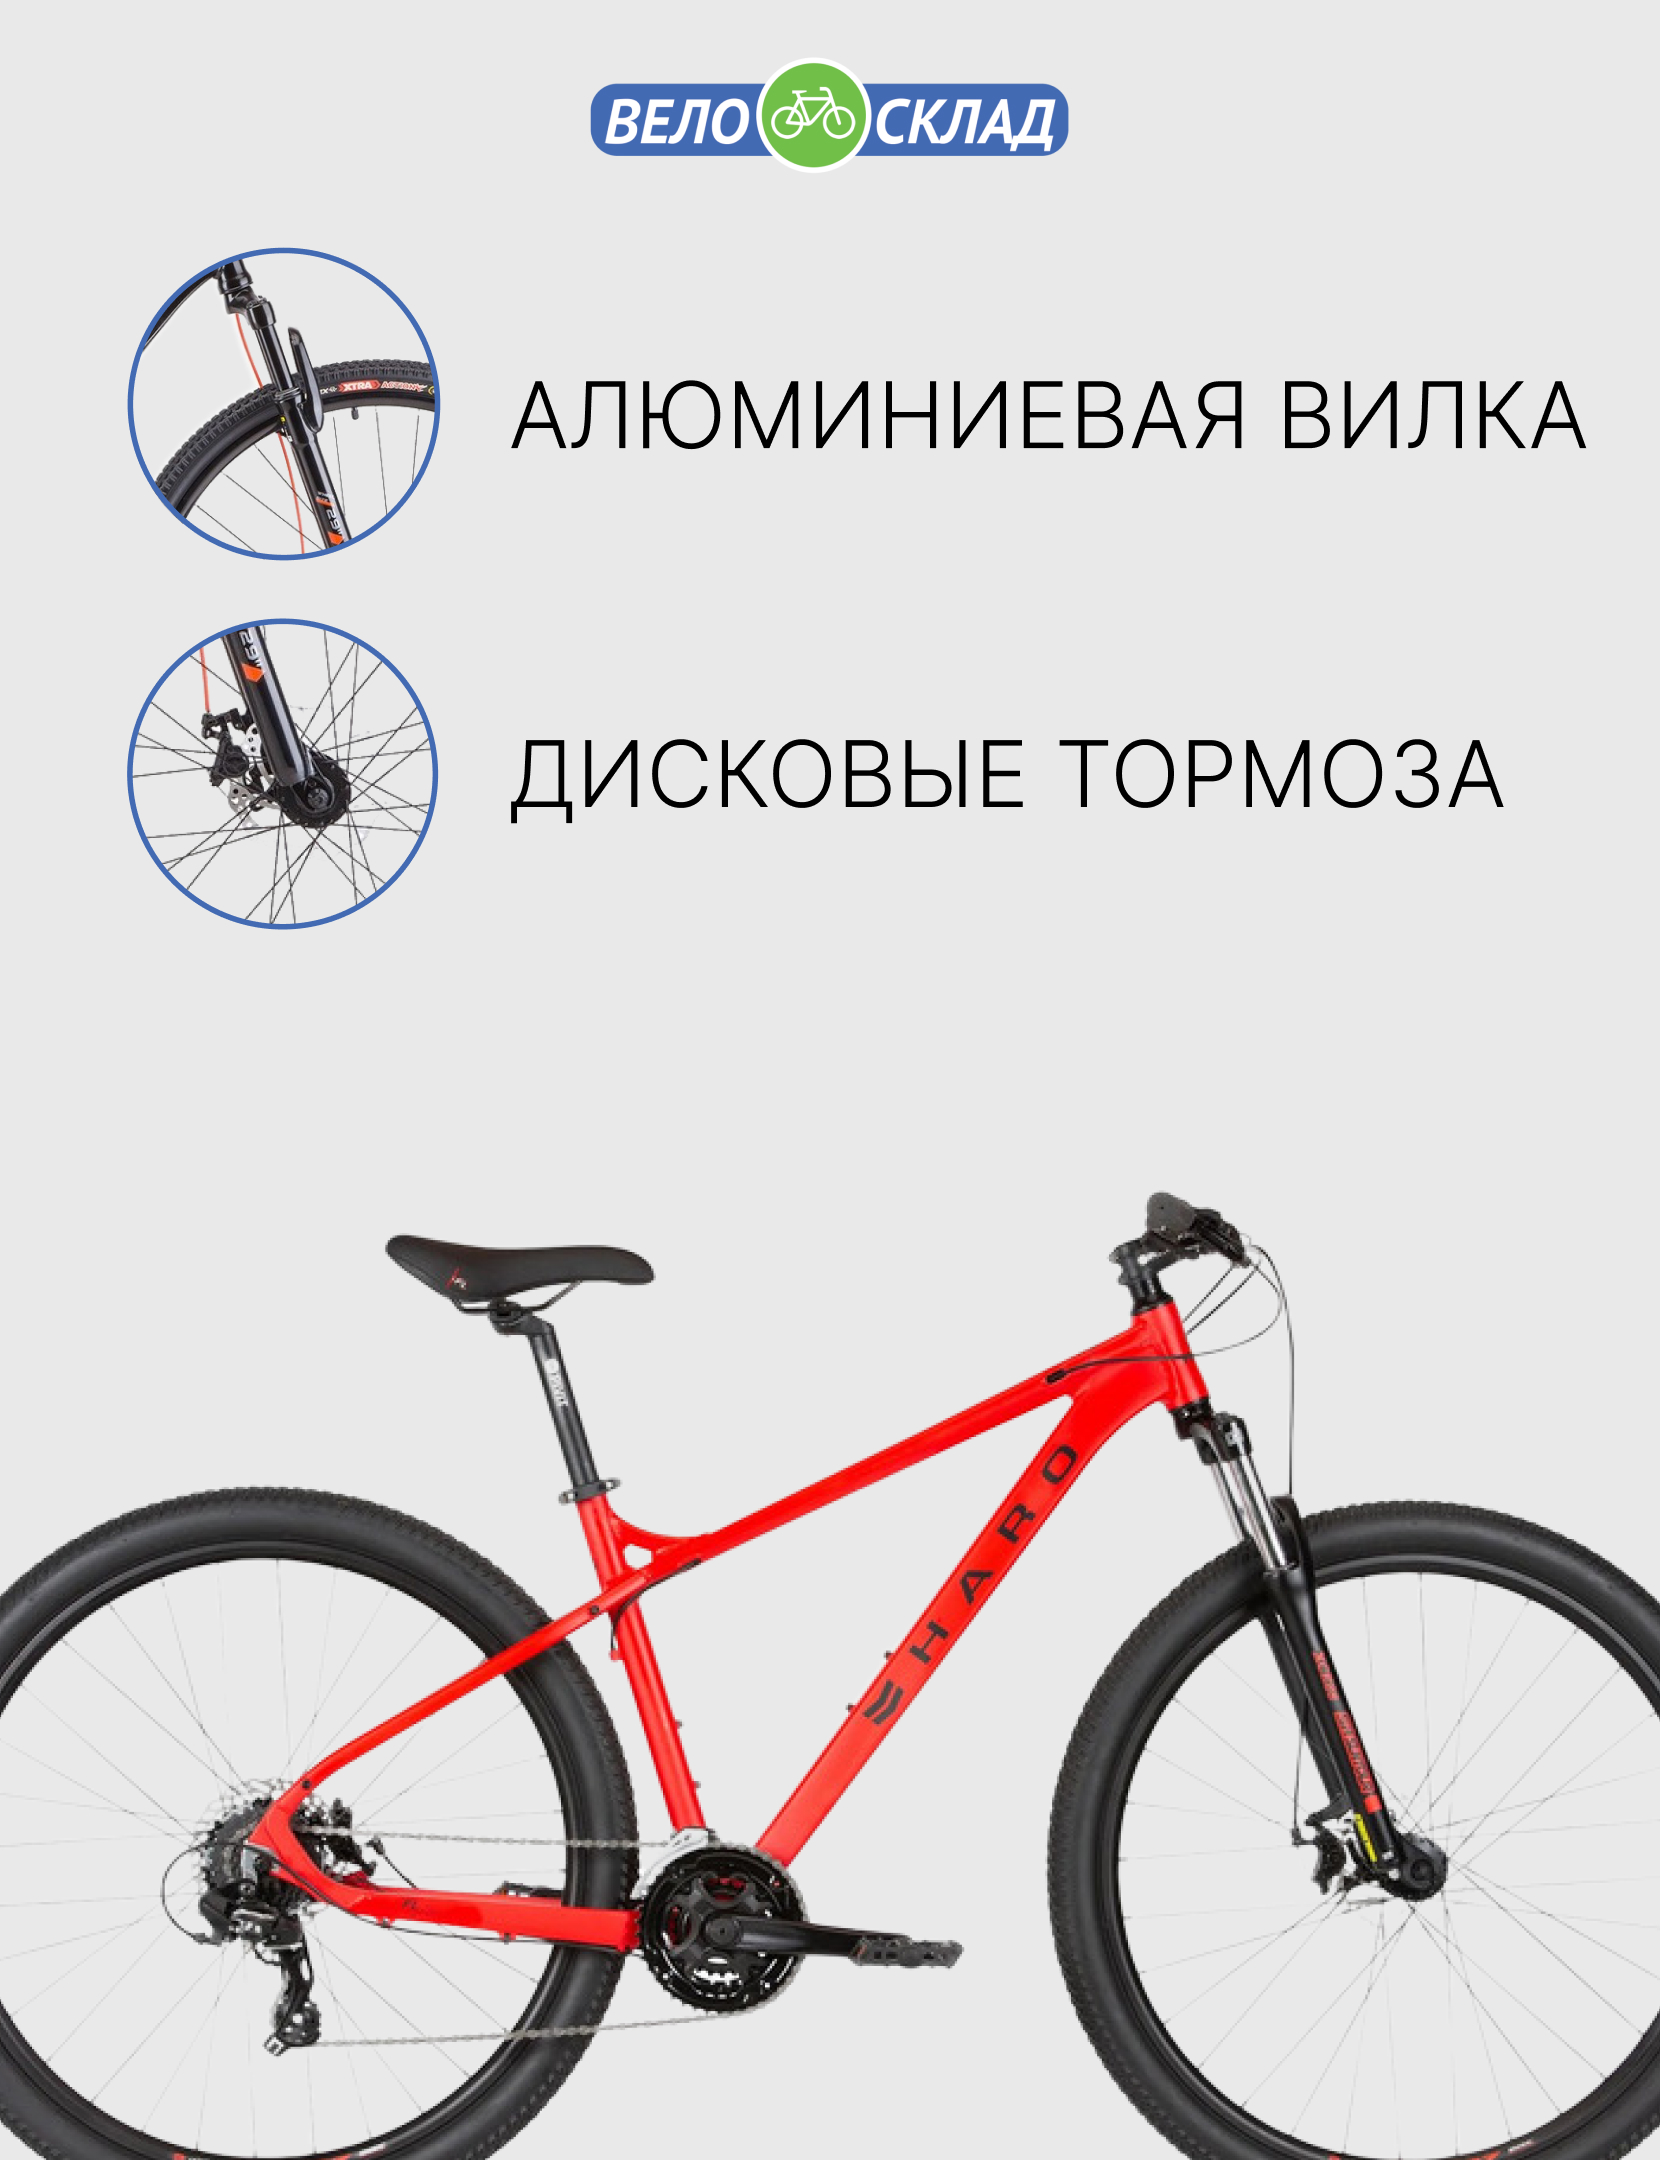 Горный велосипед Haro Flightline Two 27.5 DLX, год 2021, цвет Красный, ростовка 16